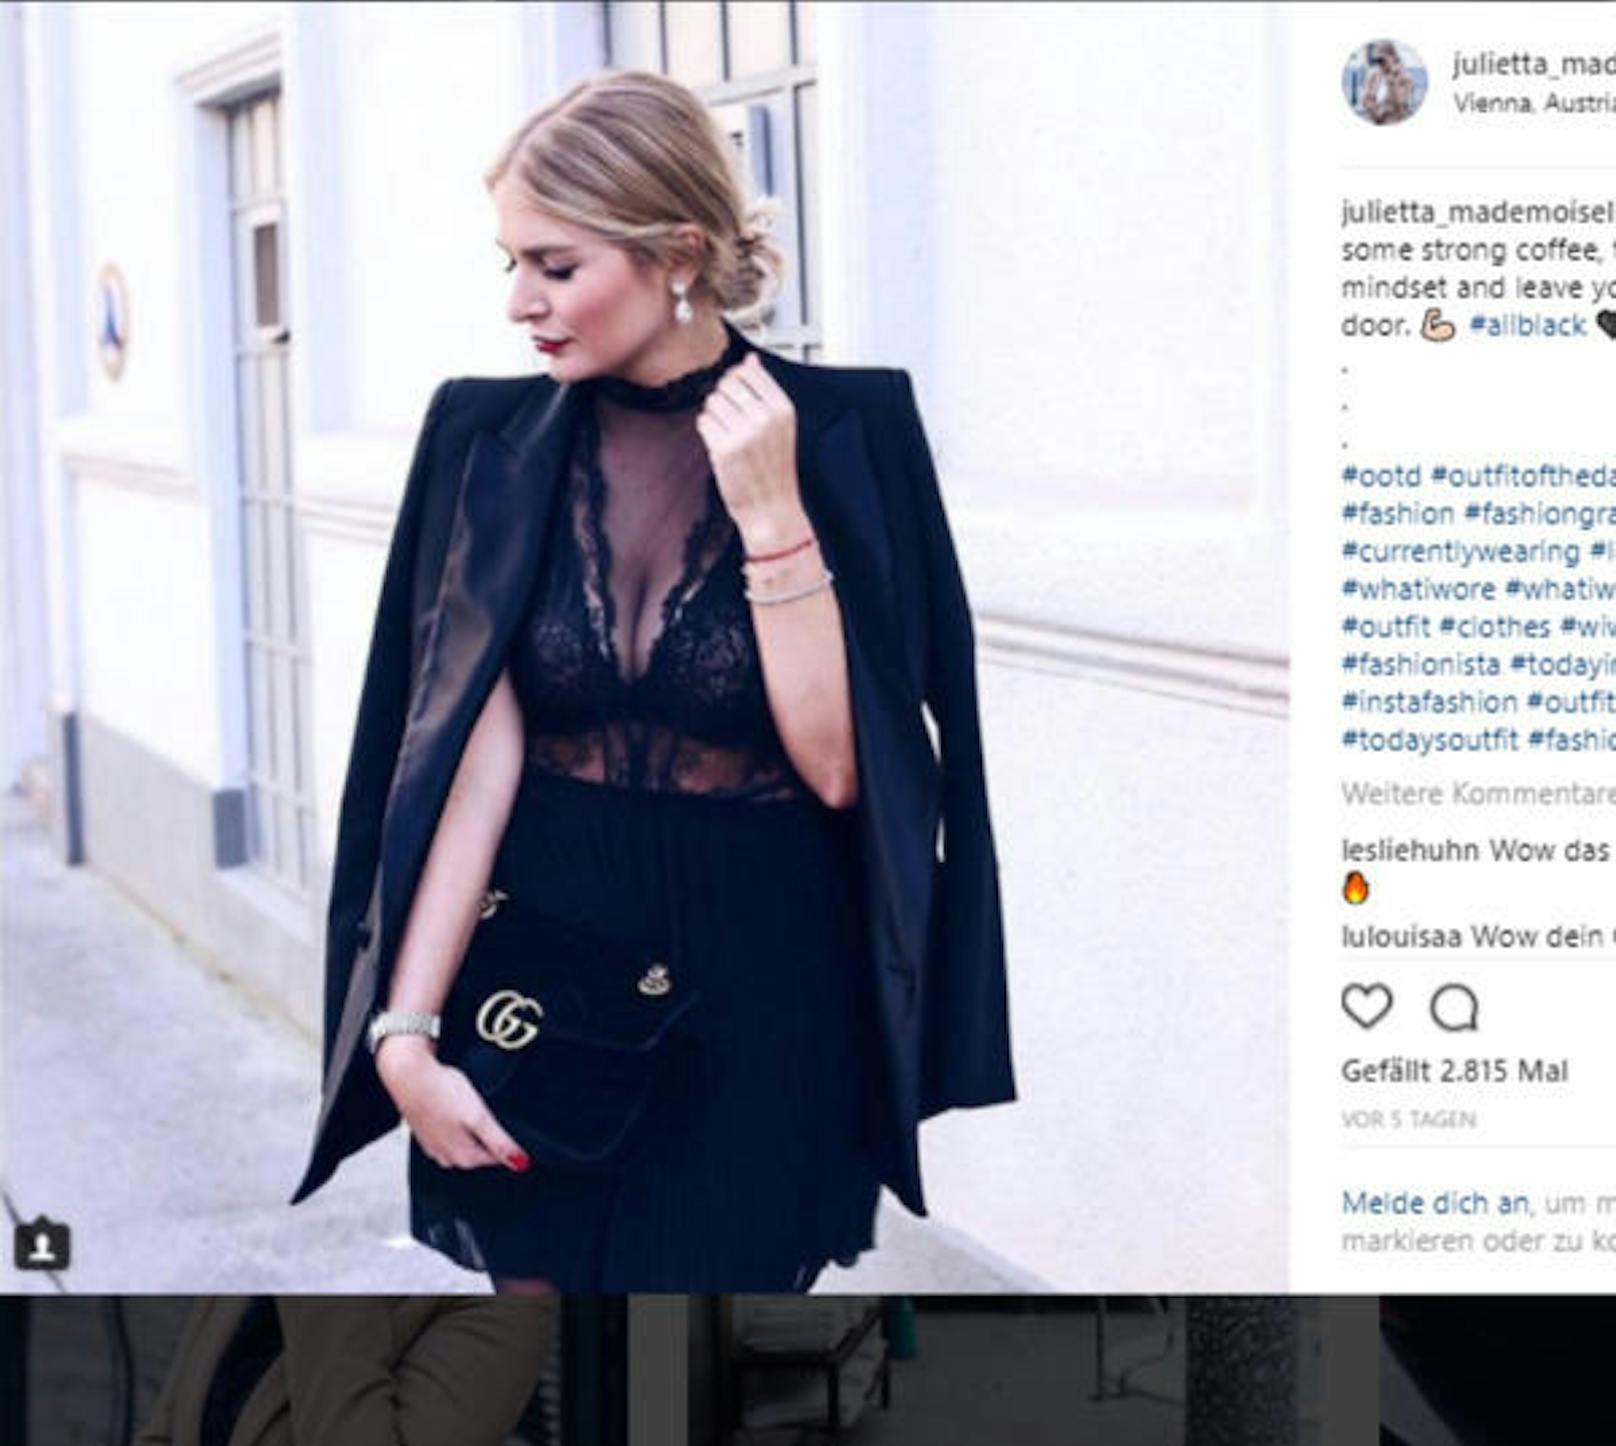 Für alle Luxus-Fans ist Julietta Mademoiselle die richtige Adresse. Die Jus-Studentin hat eine wunderschöne Taschensammlung und nimmt ihre Fans auch oft auch Reisen, z.B. nach London, mit. (Fotos: Instagram / julietta_mademoiselle)  <a href="http://instagram.com/julietta_mademoiselle" target="_blank">Instagram Profil</a>